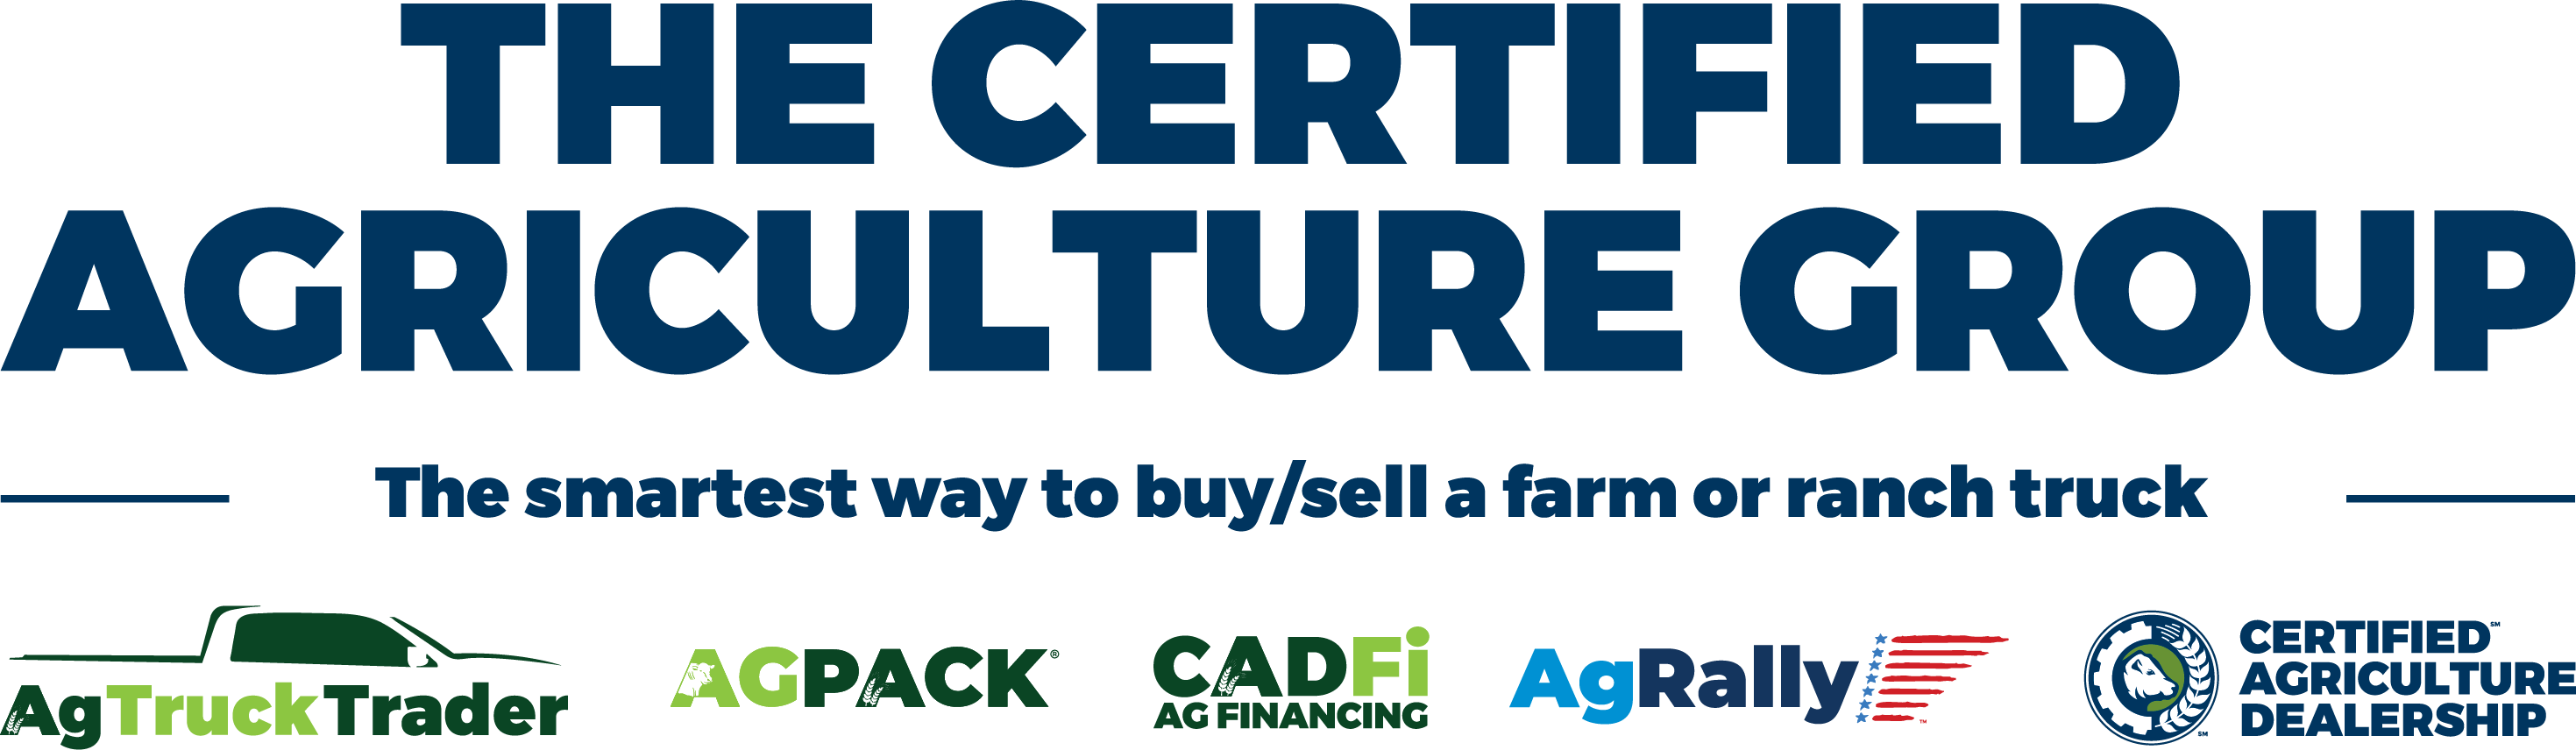 Certified Agriculture Dealer’s AgPack